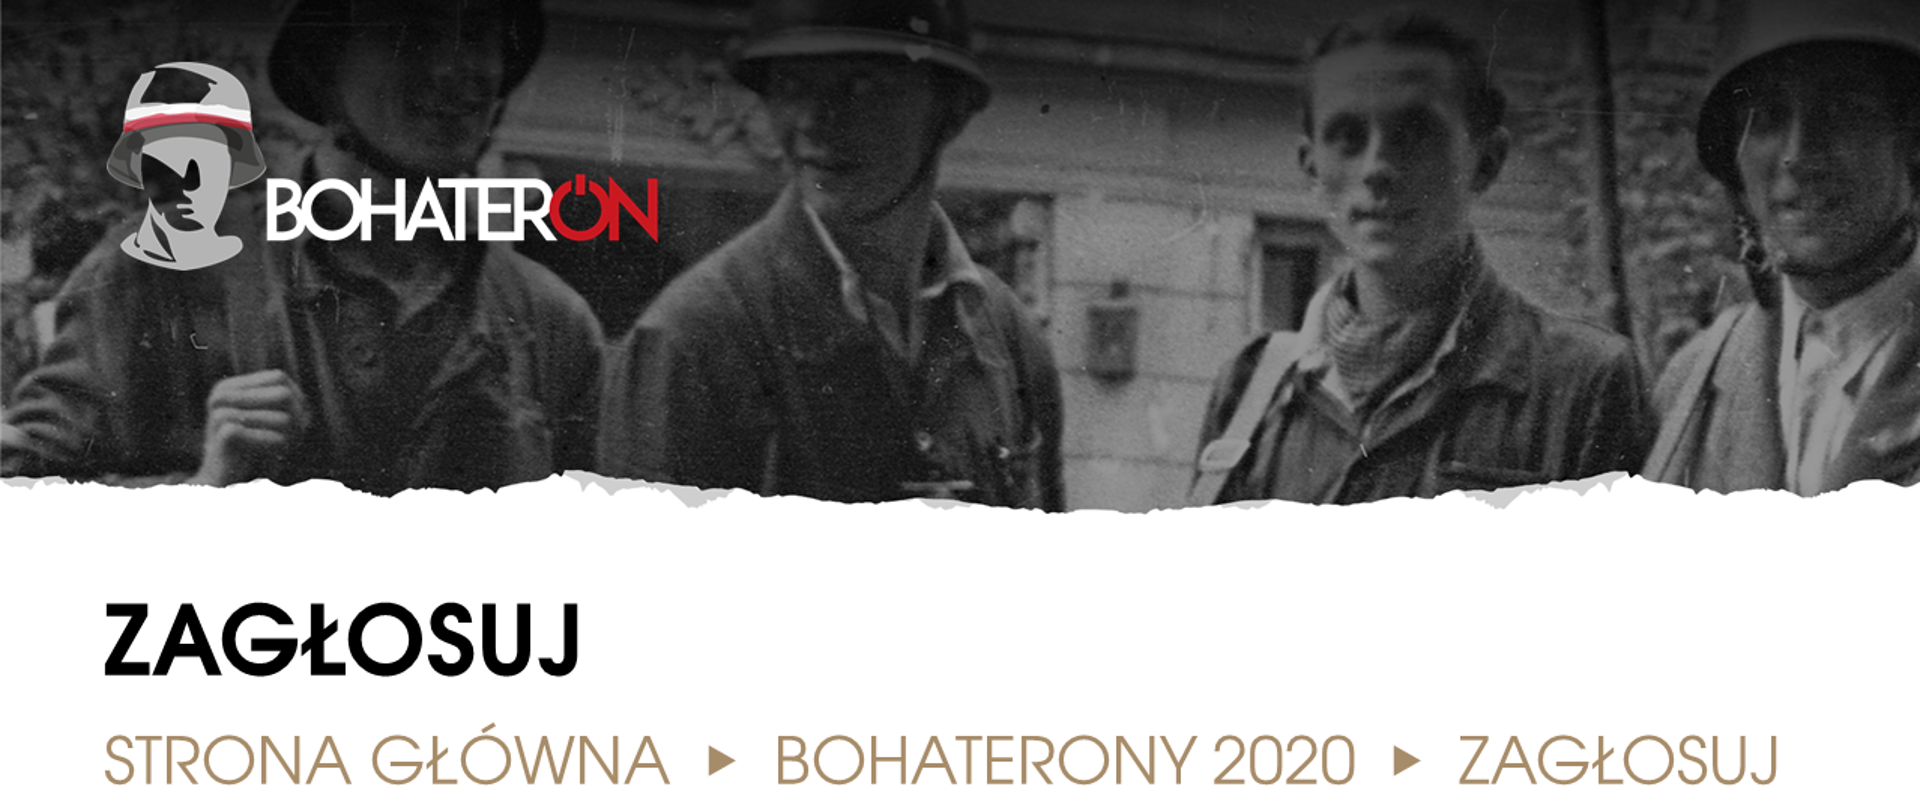 Stare zdjęcie żołnierzy, logo BohaterON po lewo u góry, a na dole tekst "Zagłosuj. strona główna > bohaterony2020 > zagłosuj".